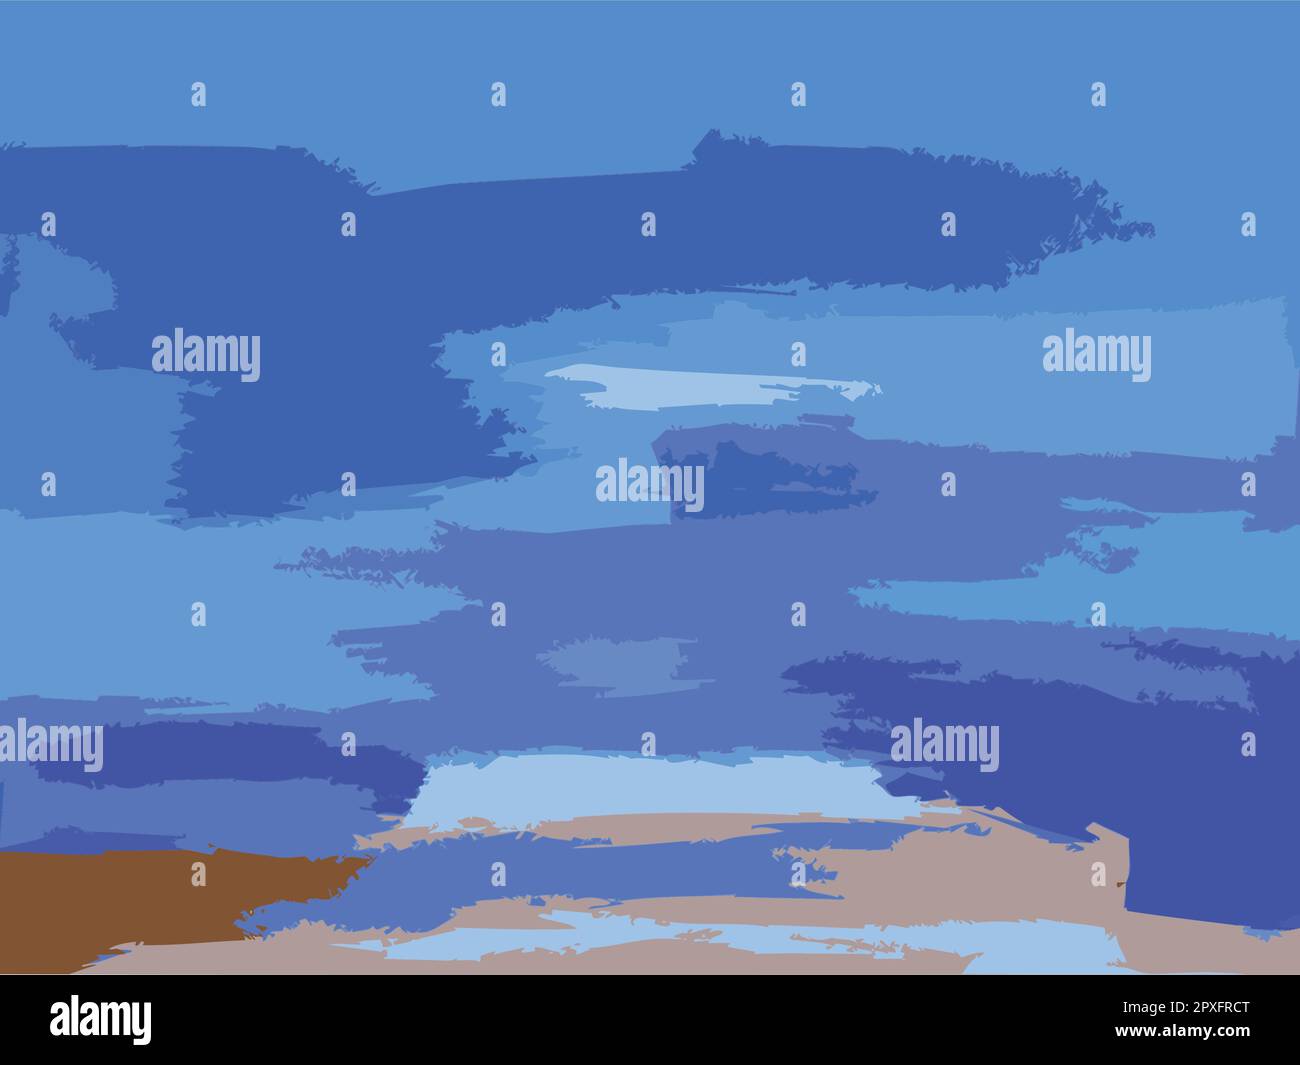 Art abstrait moderne Illustration de la peinture contemporaine originale - nuage de l'île Mer Shore Océan ciel Bleu blanc Illustration de Vecteur